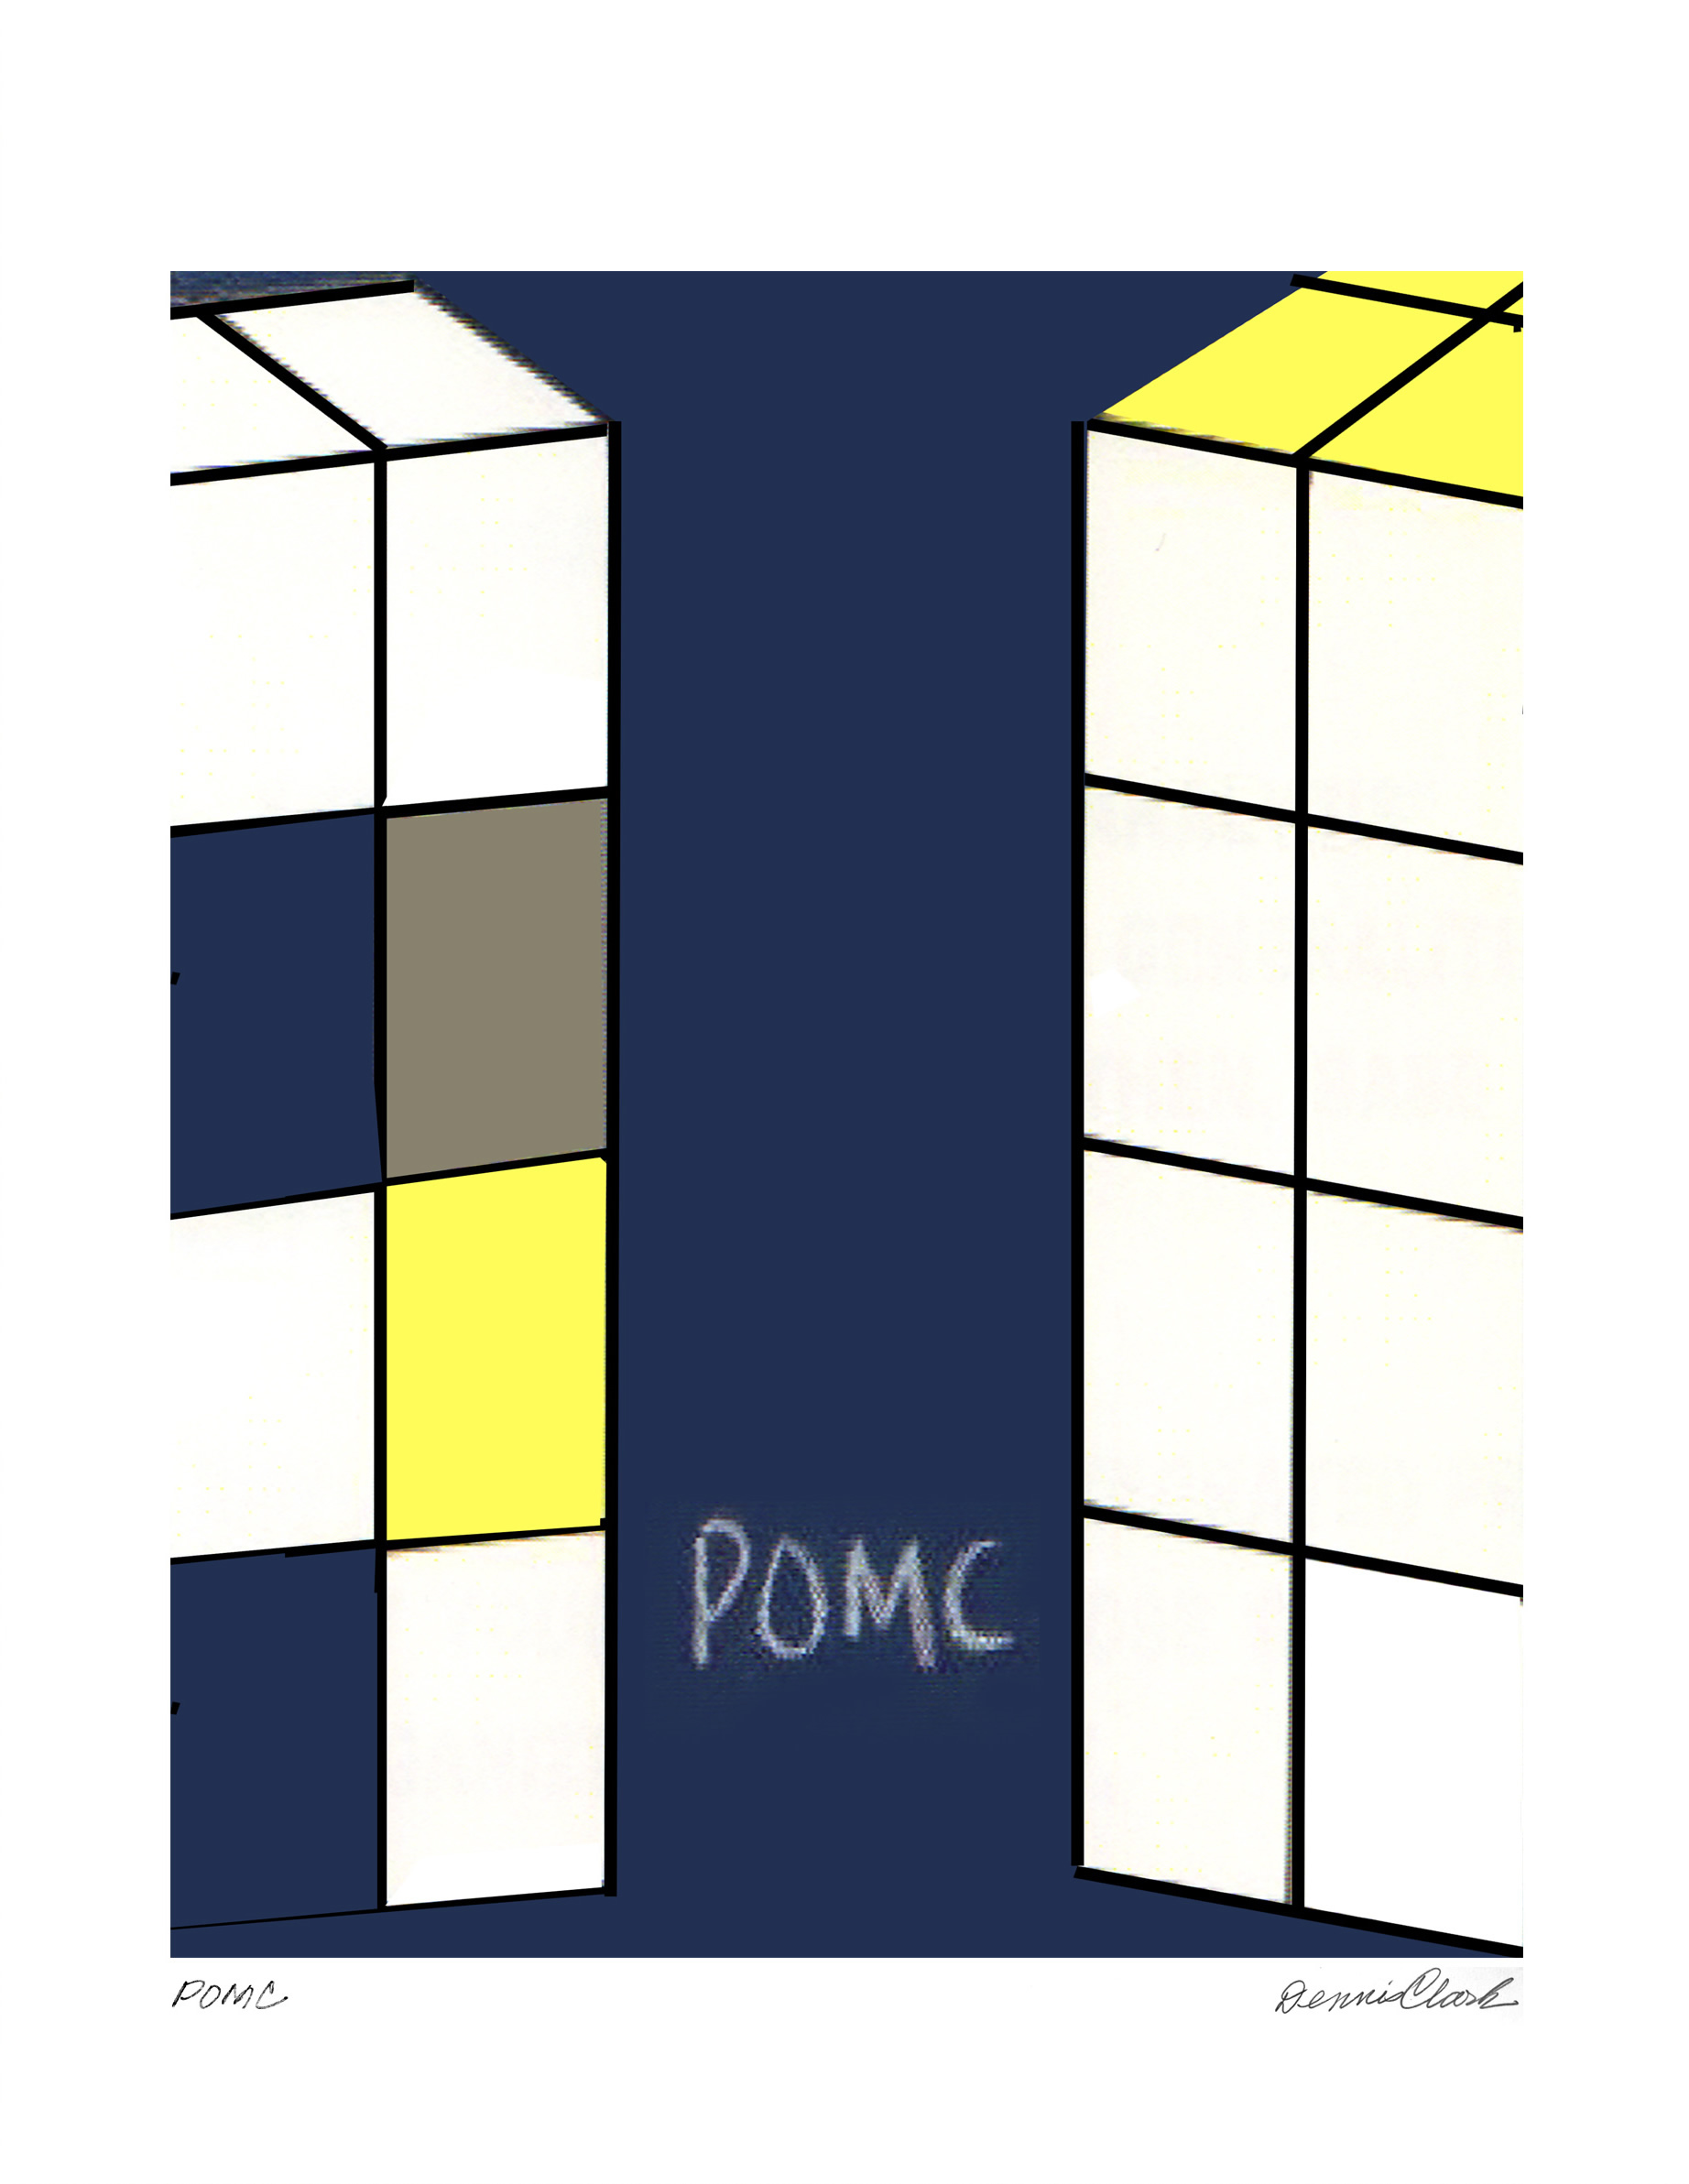 "POMC"